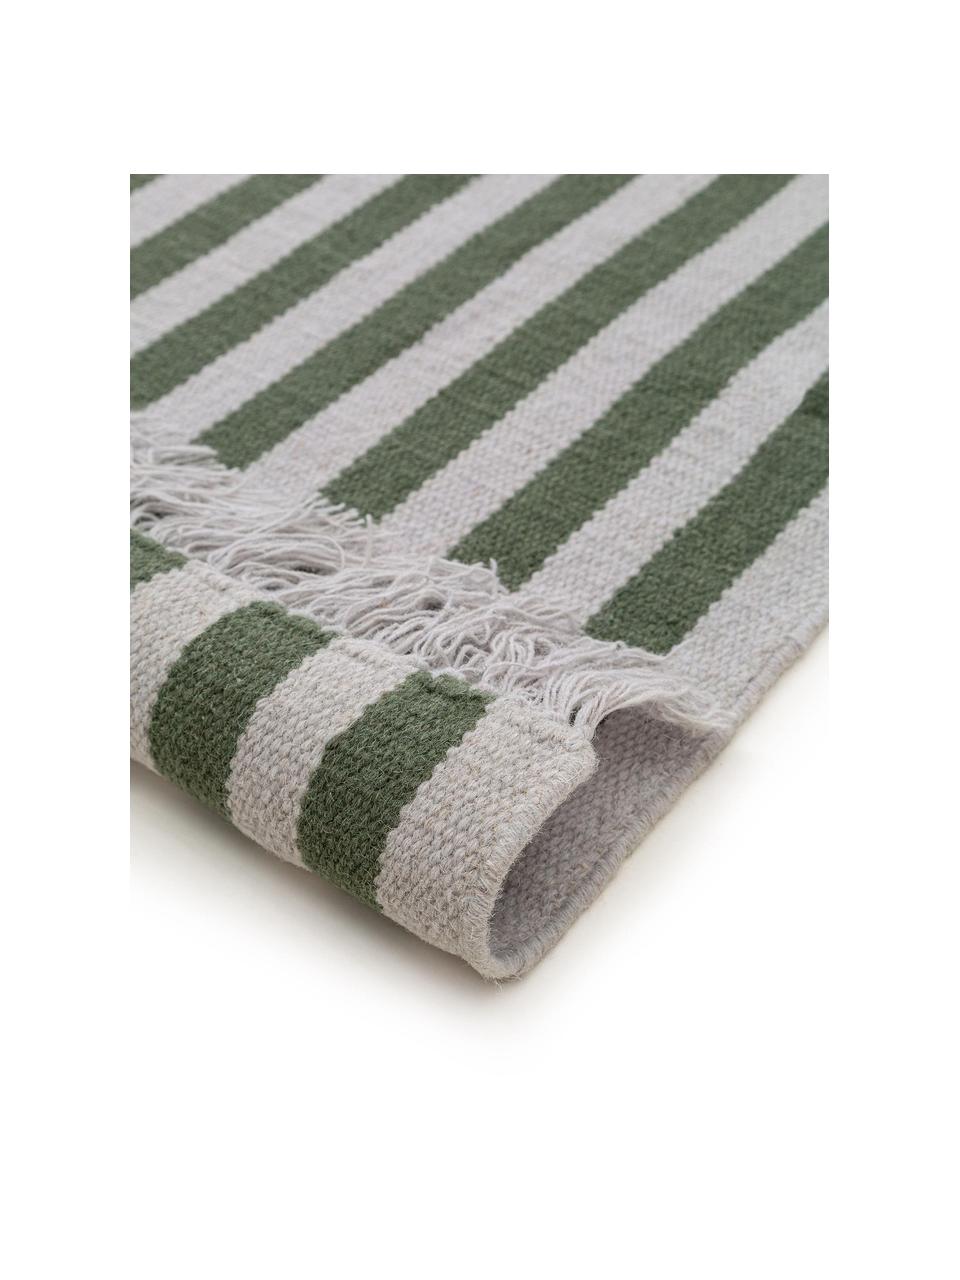 Alfombra de lana Gitta, 90% lana, 10% algodón
Las alfombras de lana se pueden aflojar durante las primeras semanas de uso, la pelusa se reduce con el uso diario, Verde, gris claro, An 160 x L 230 cm (Tamaño M)